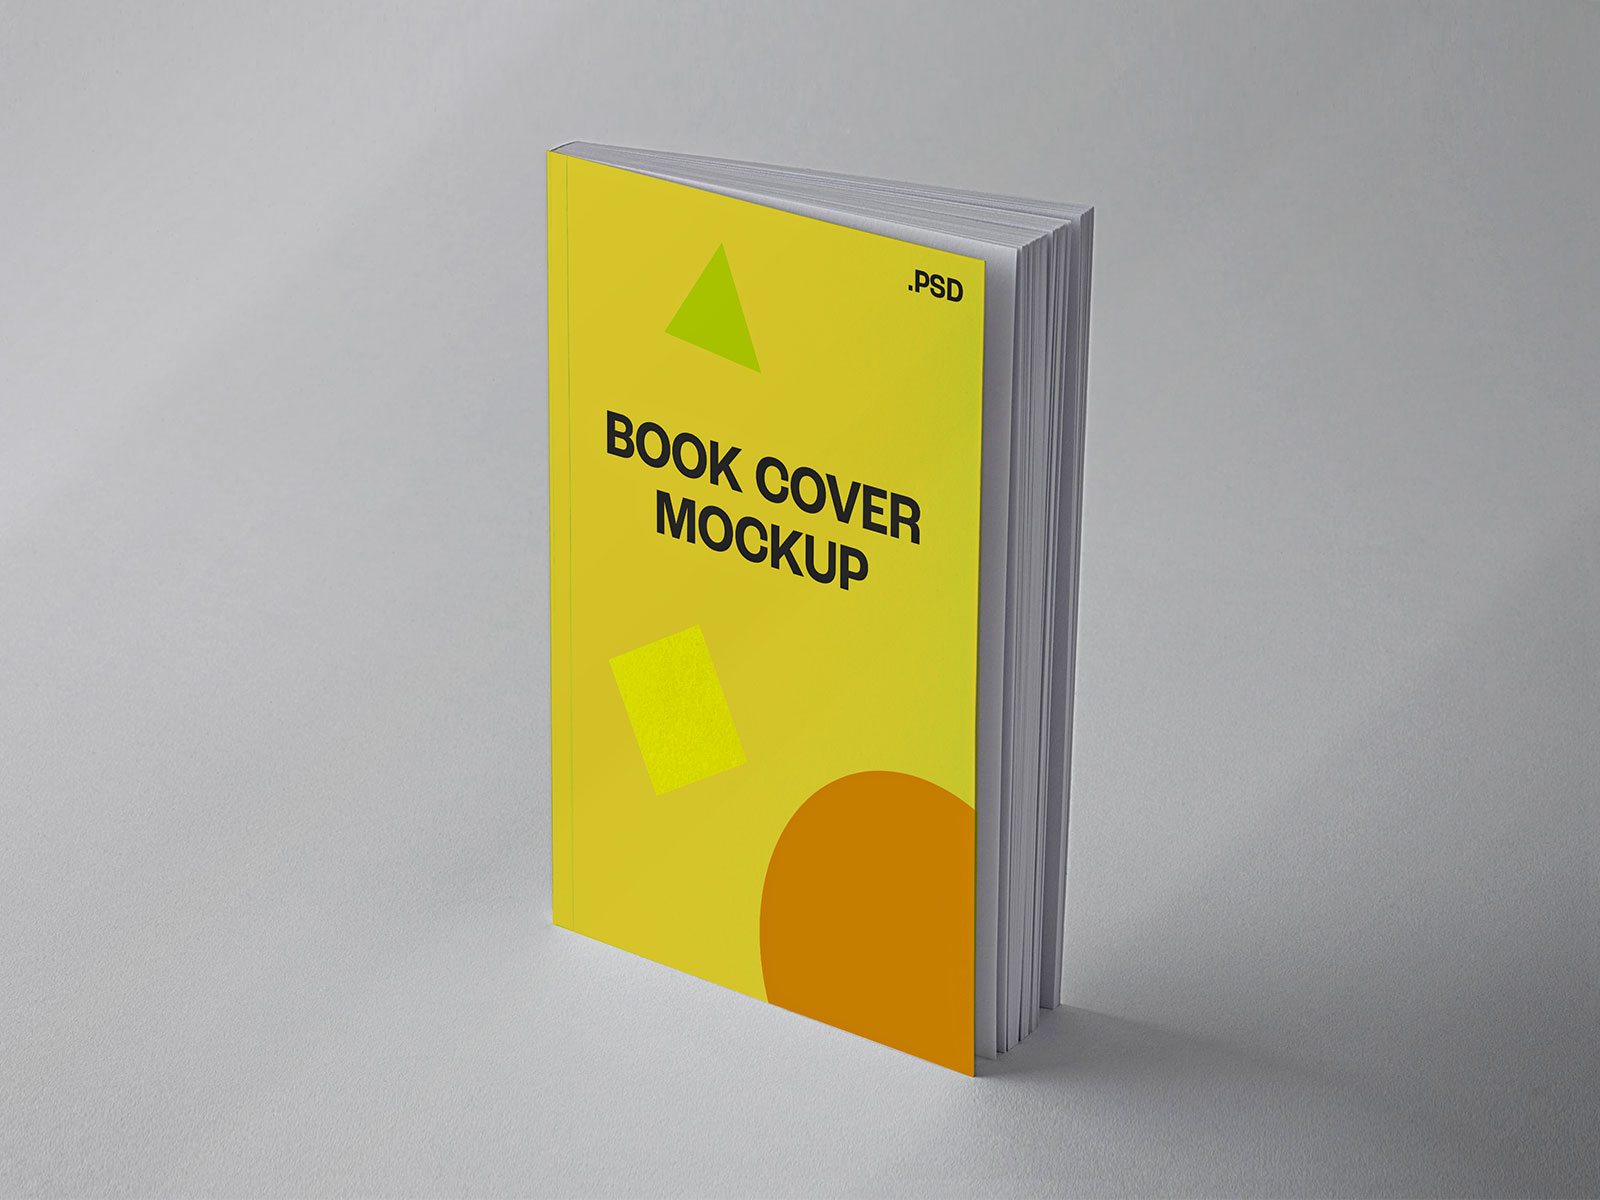 Book Mockups - The Best Free Mockups